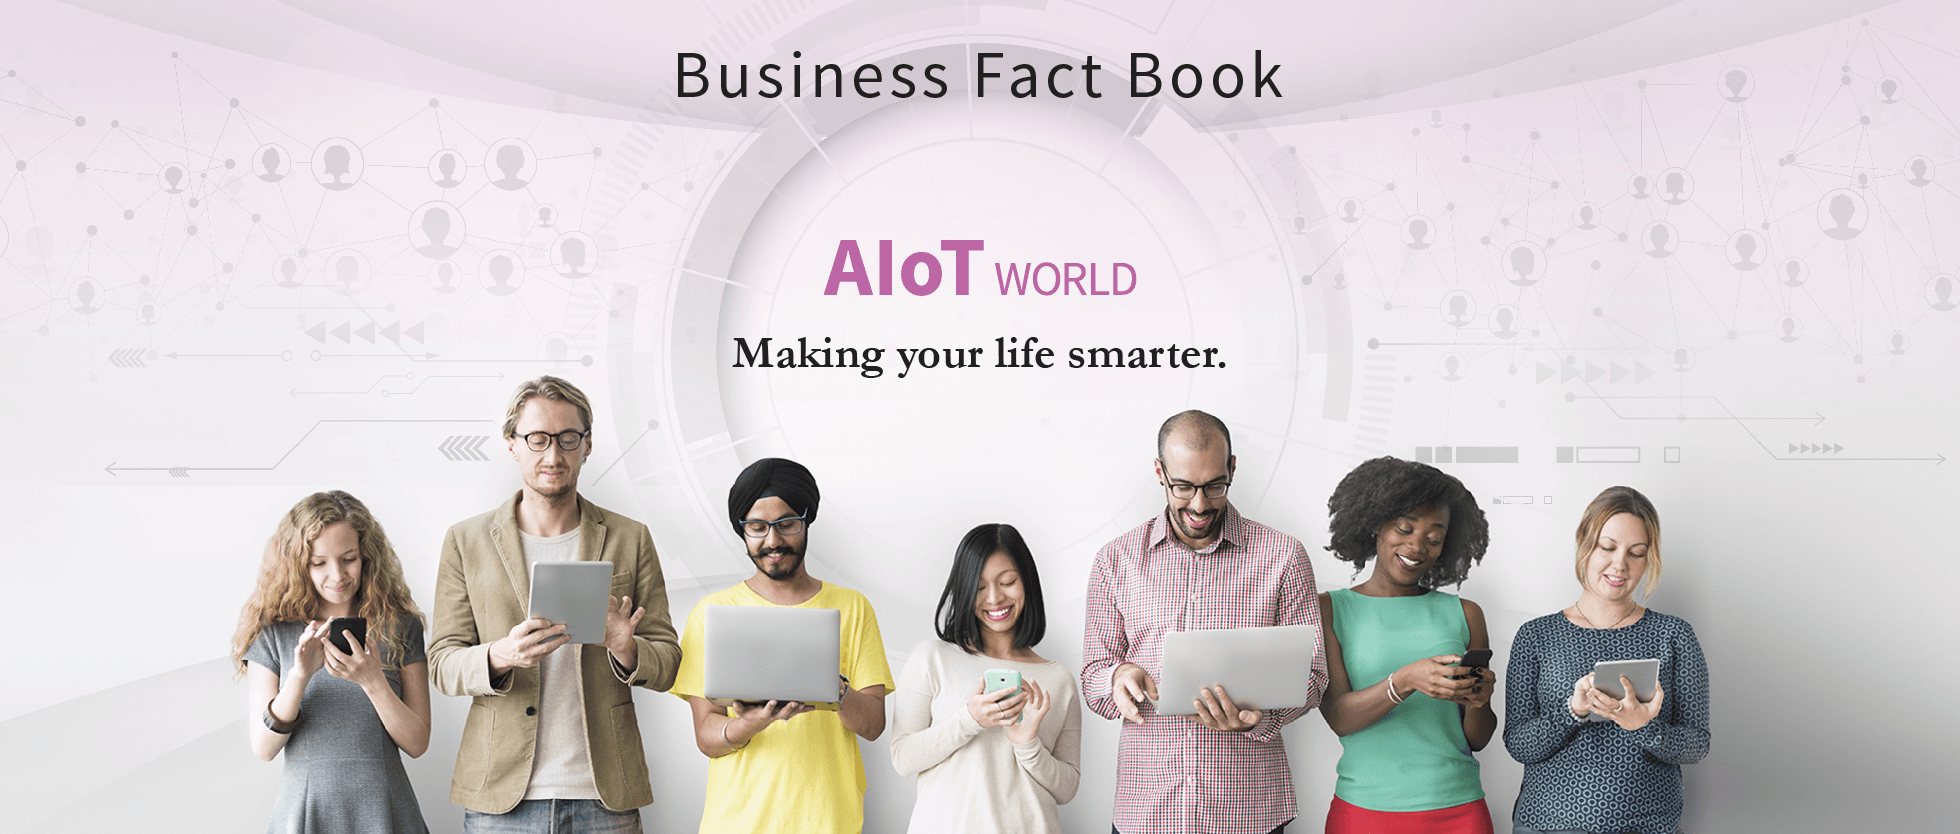 Business Fact Book: AIoT World